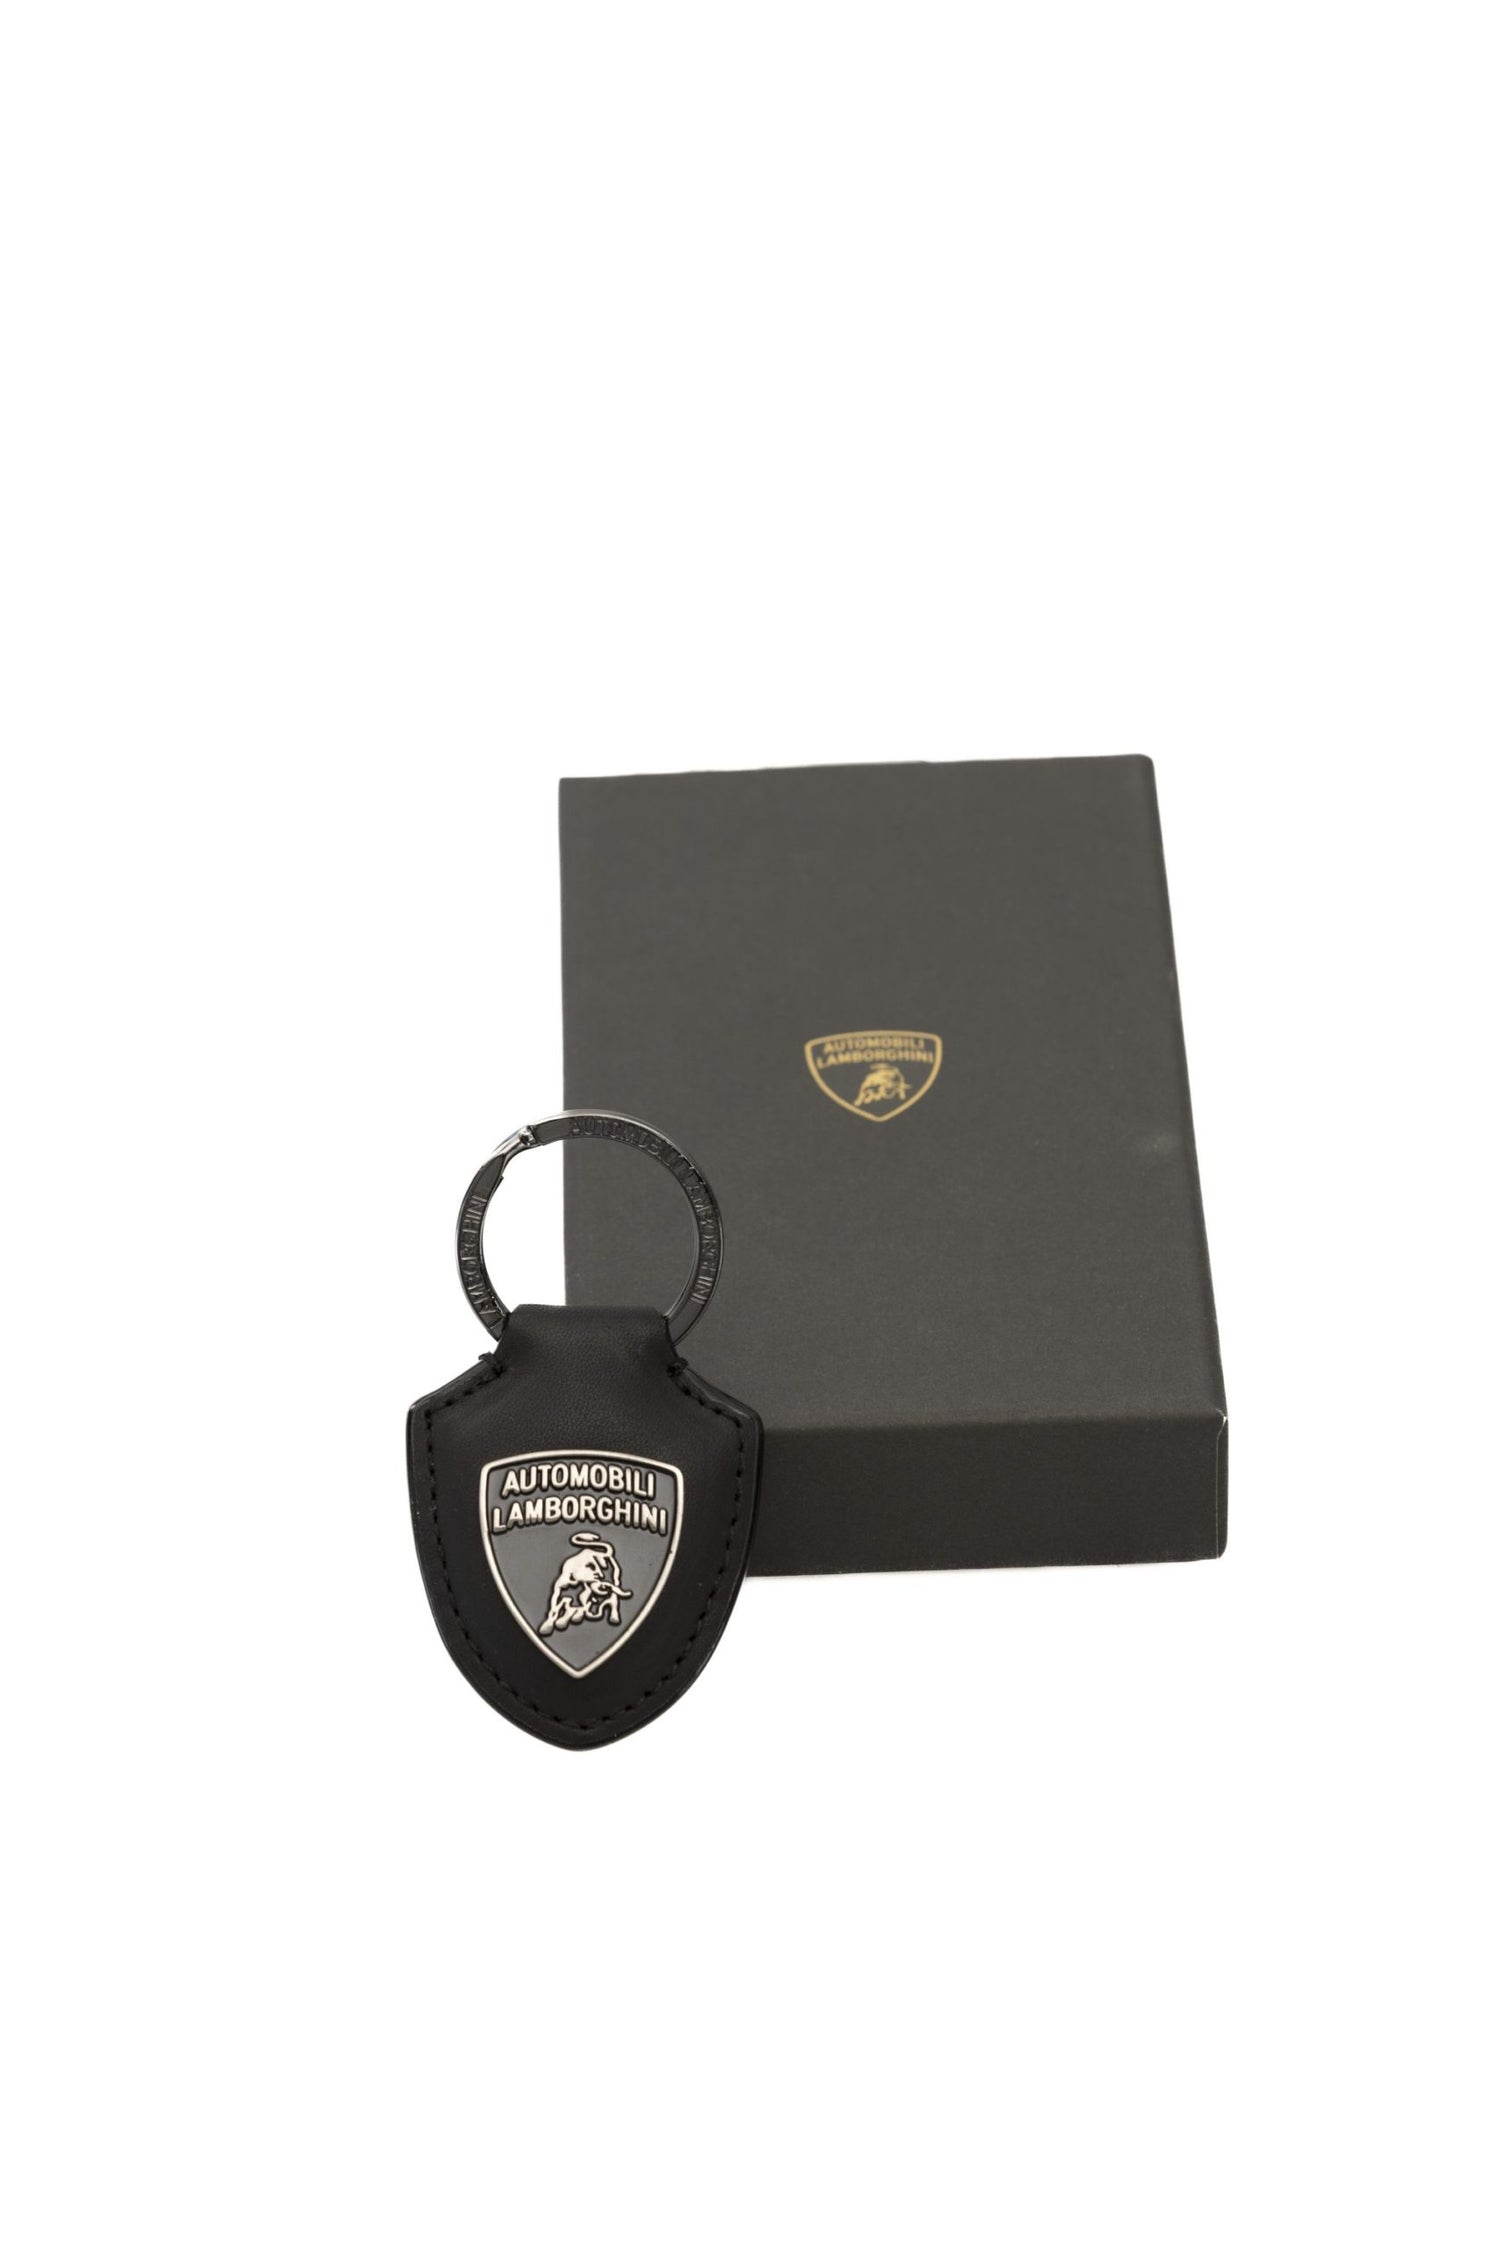 Automobili Lamborghini Black  Keychain - DEA STILOSA MILANO